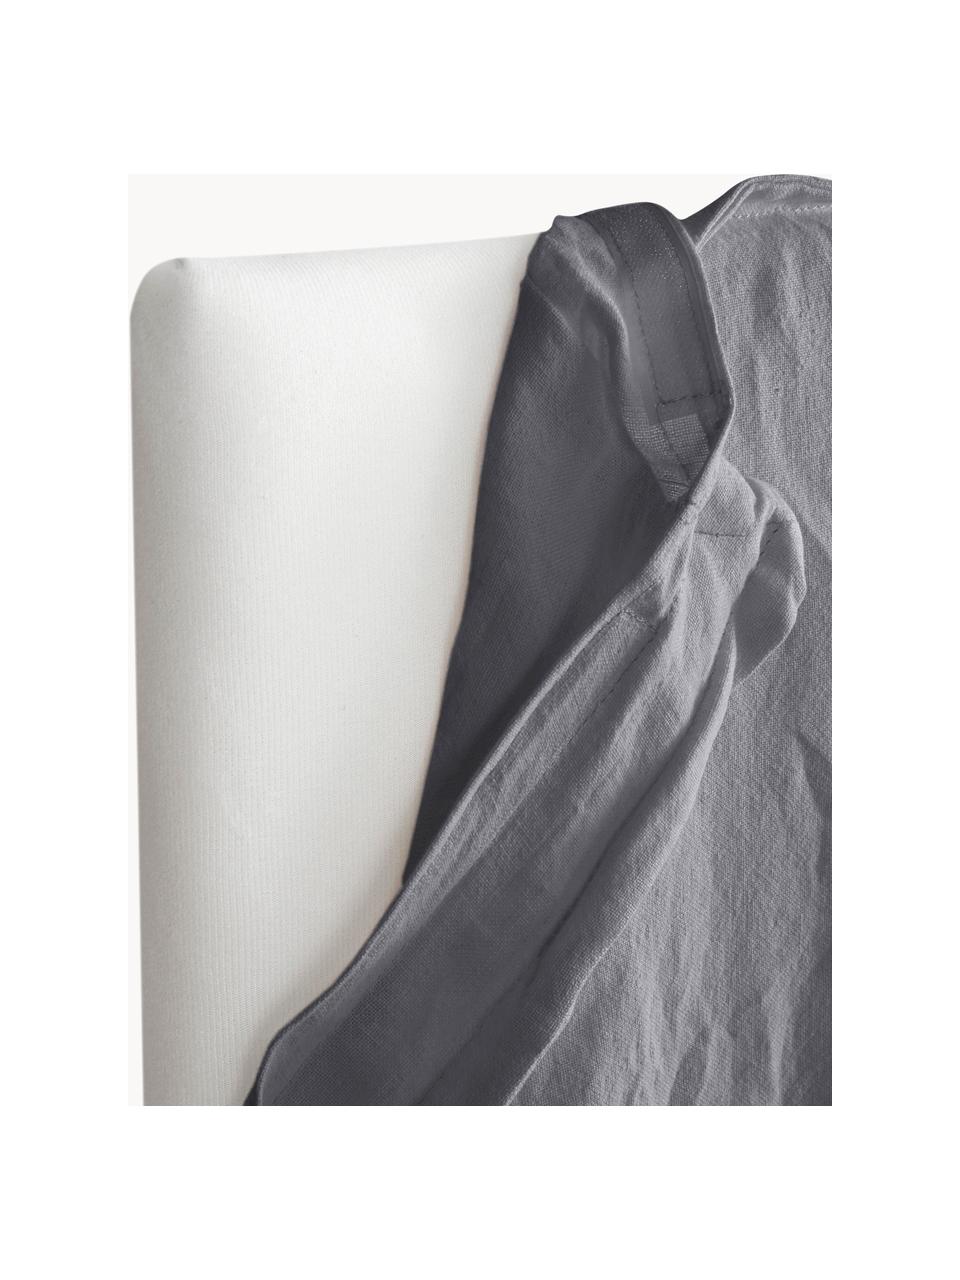 Tête de lit en lin Palma, Lin gris foncé, larg. 180 x haut. 122 cm